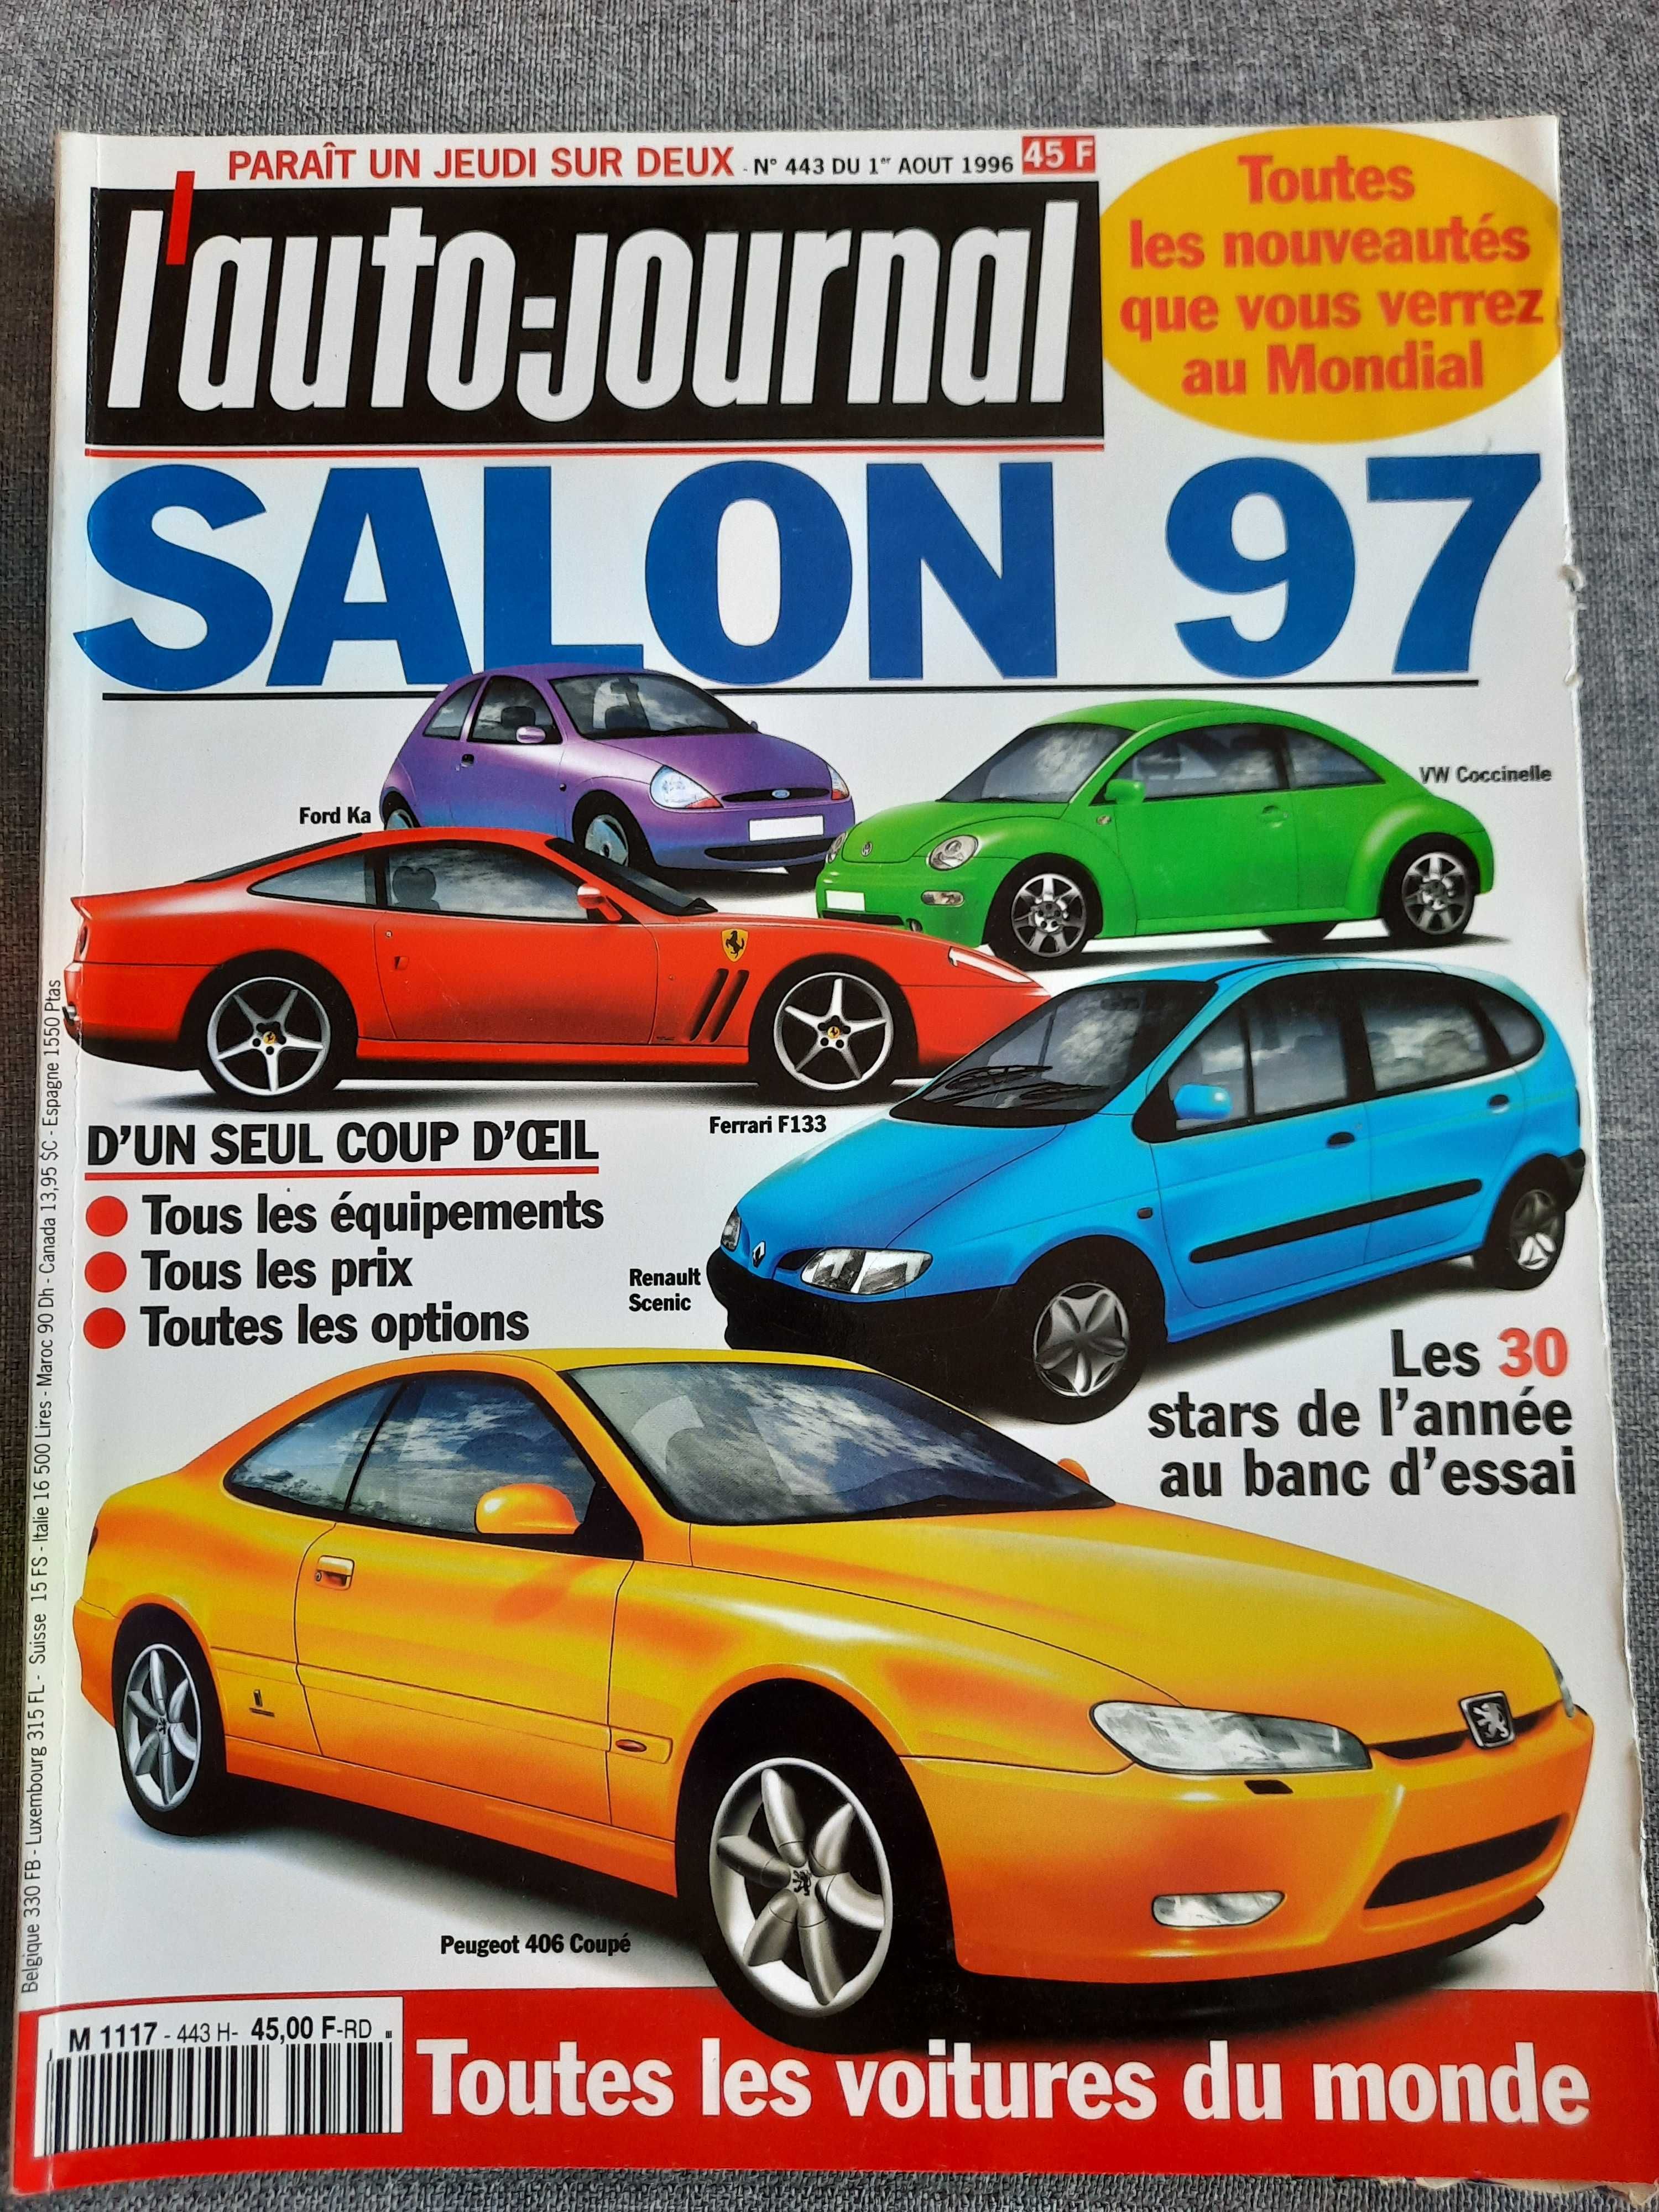 L'auto - journal Salon 97